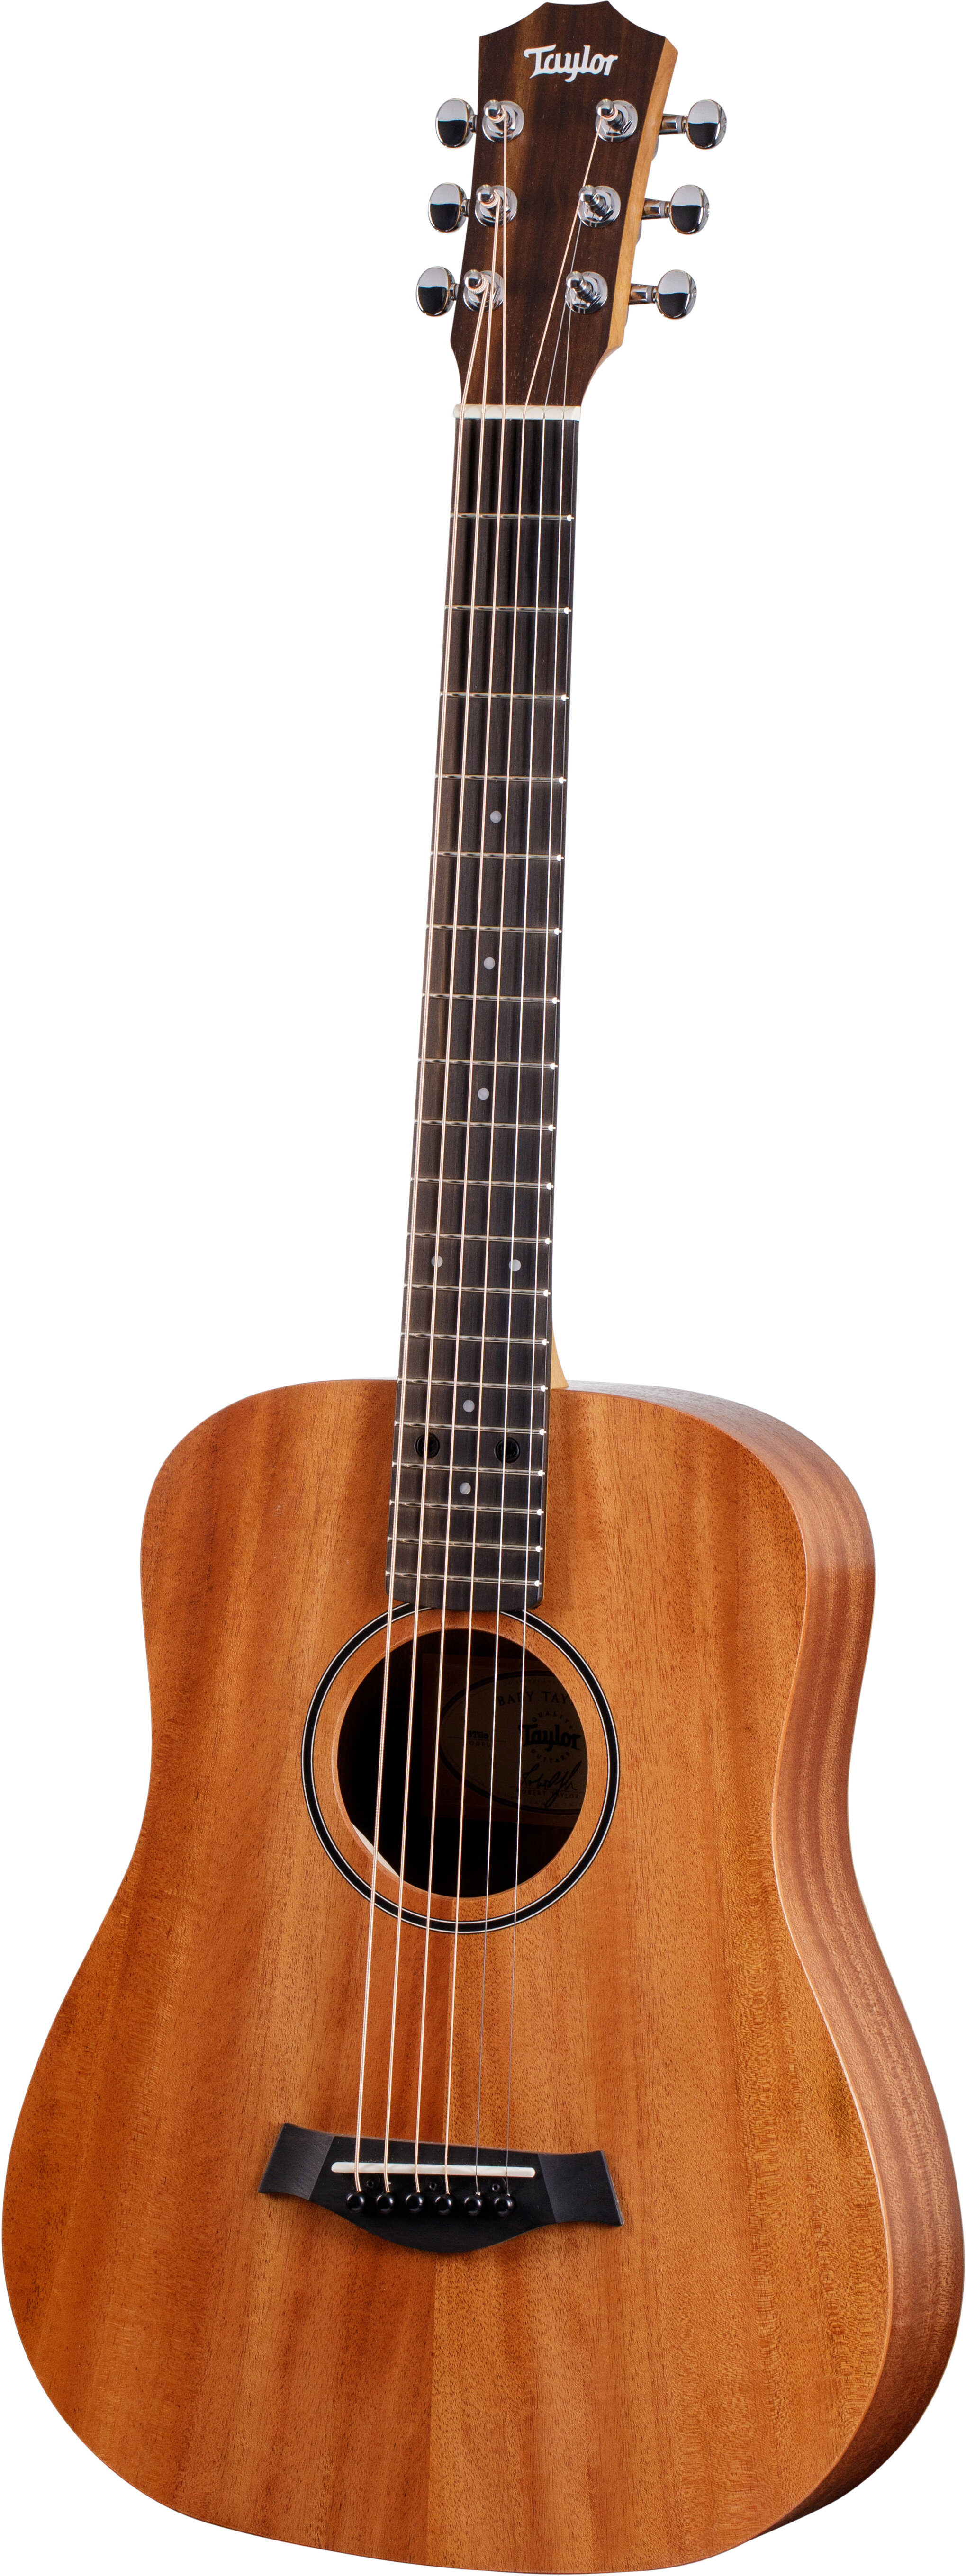 Taylor BT2e Baby Taylor 3/4 Size Acoustic Guitar -  Taylor Guitars, BT2e-22